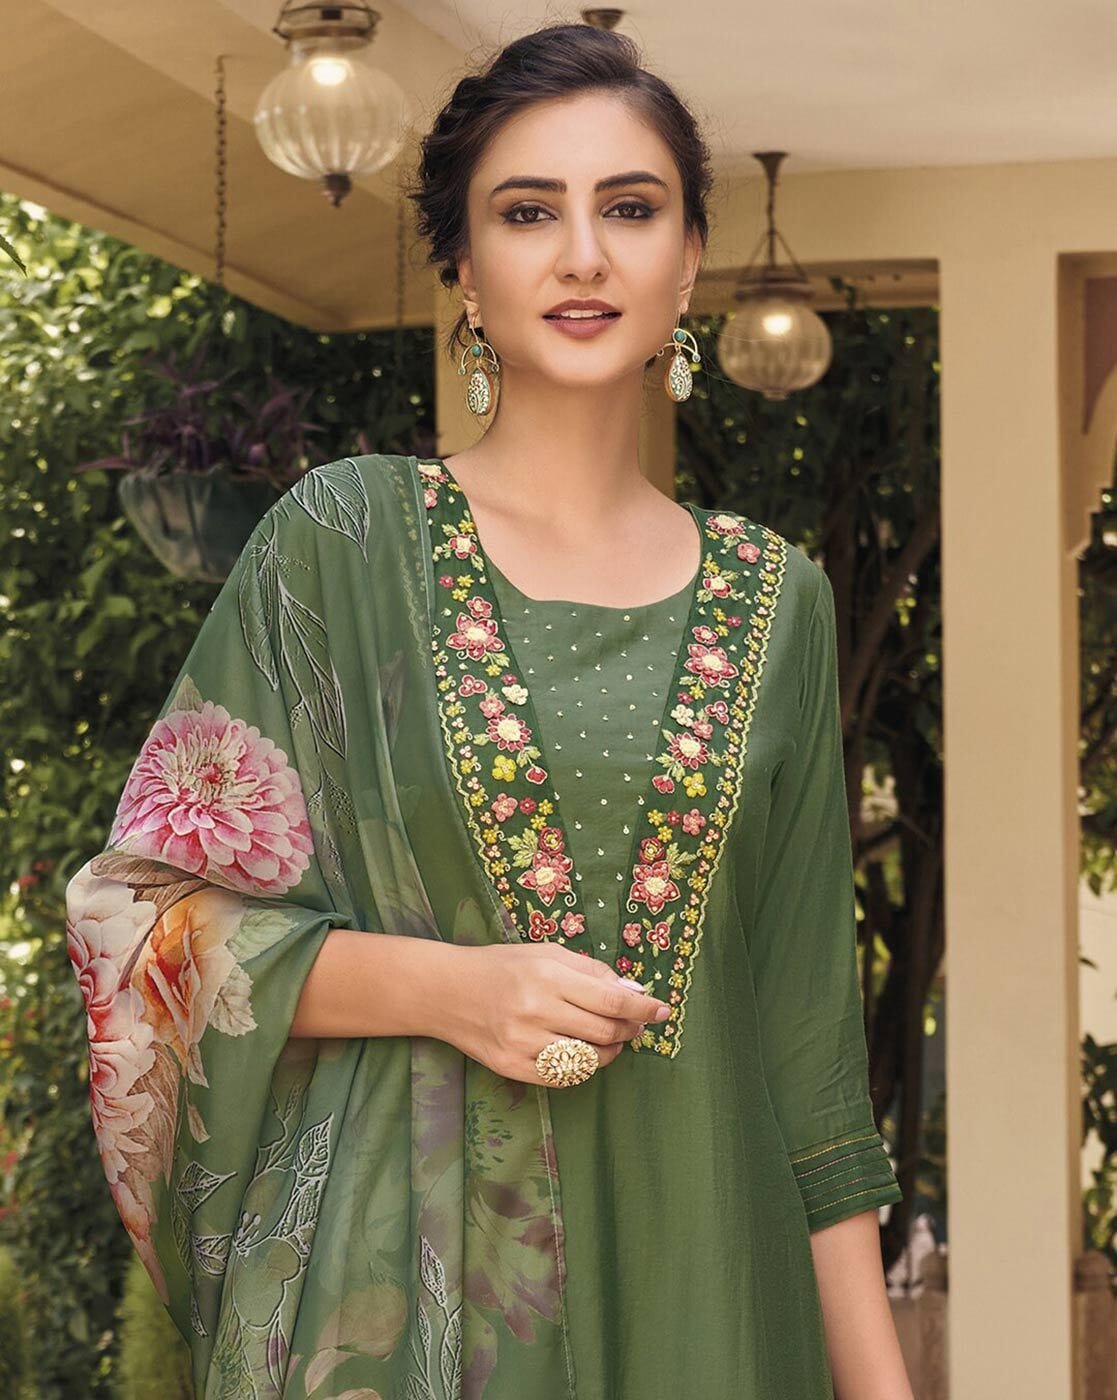 Buy Green Kurta Suit Sets for Women by Prebloom Online